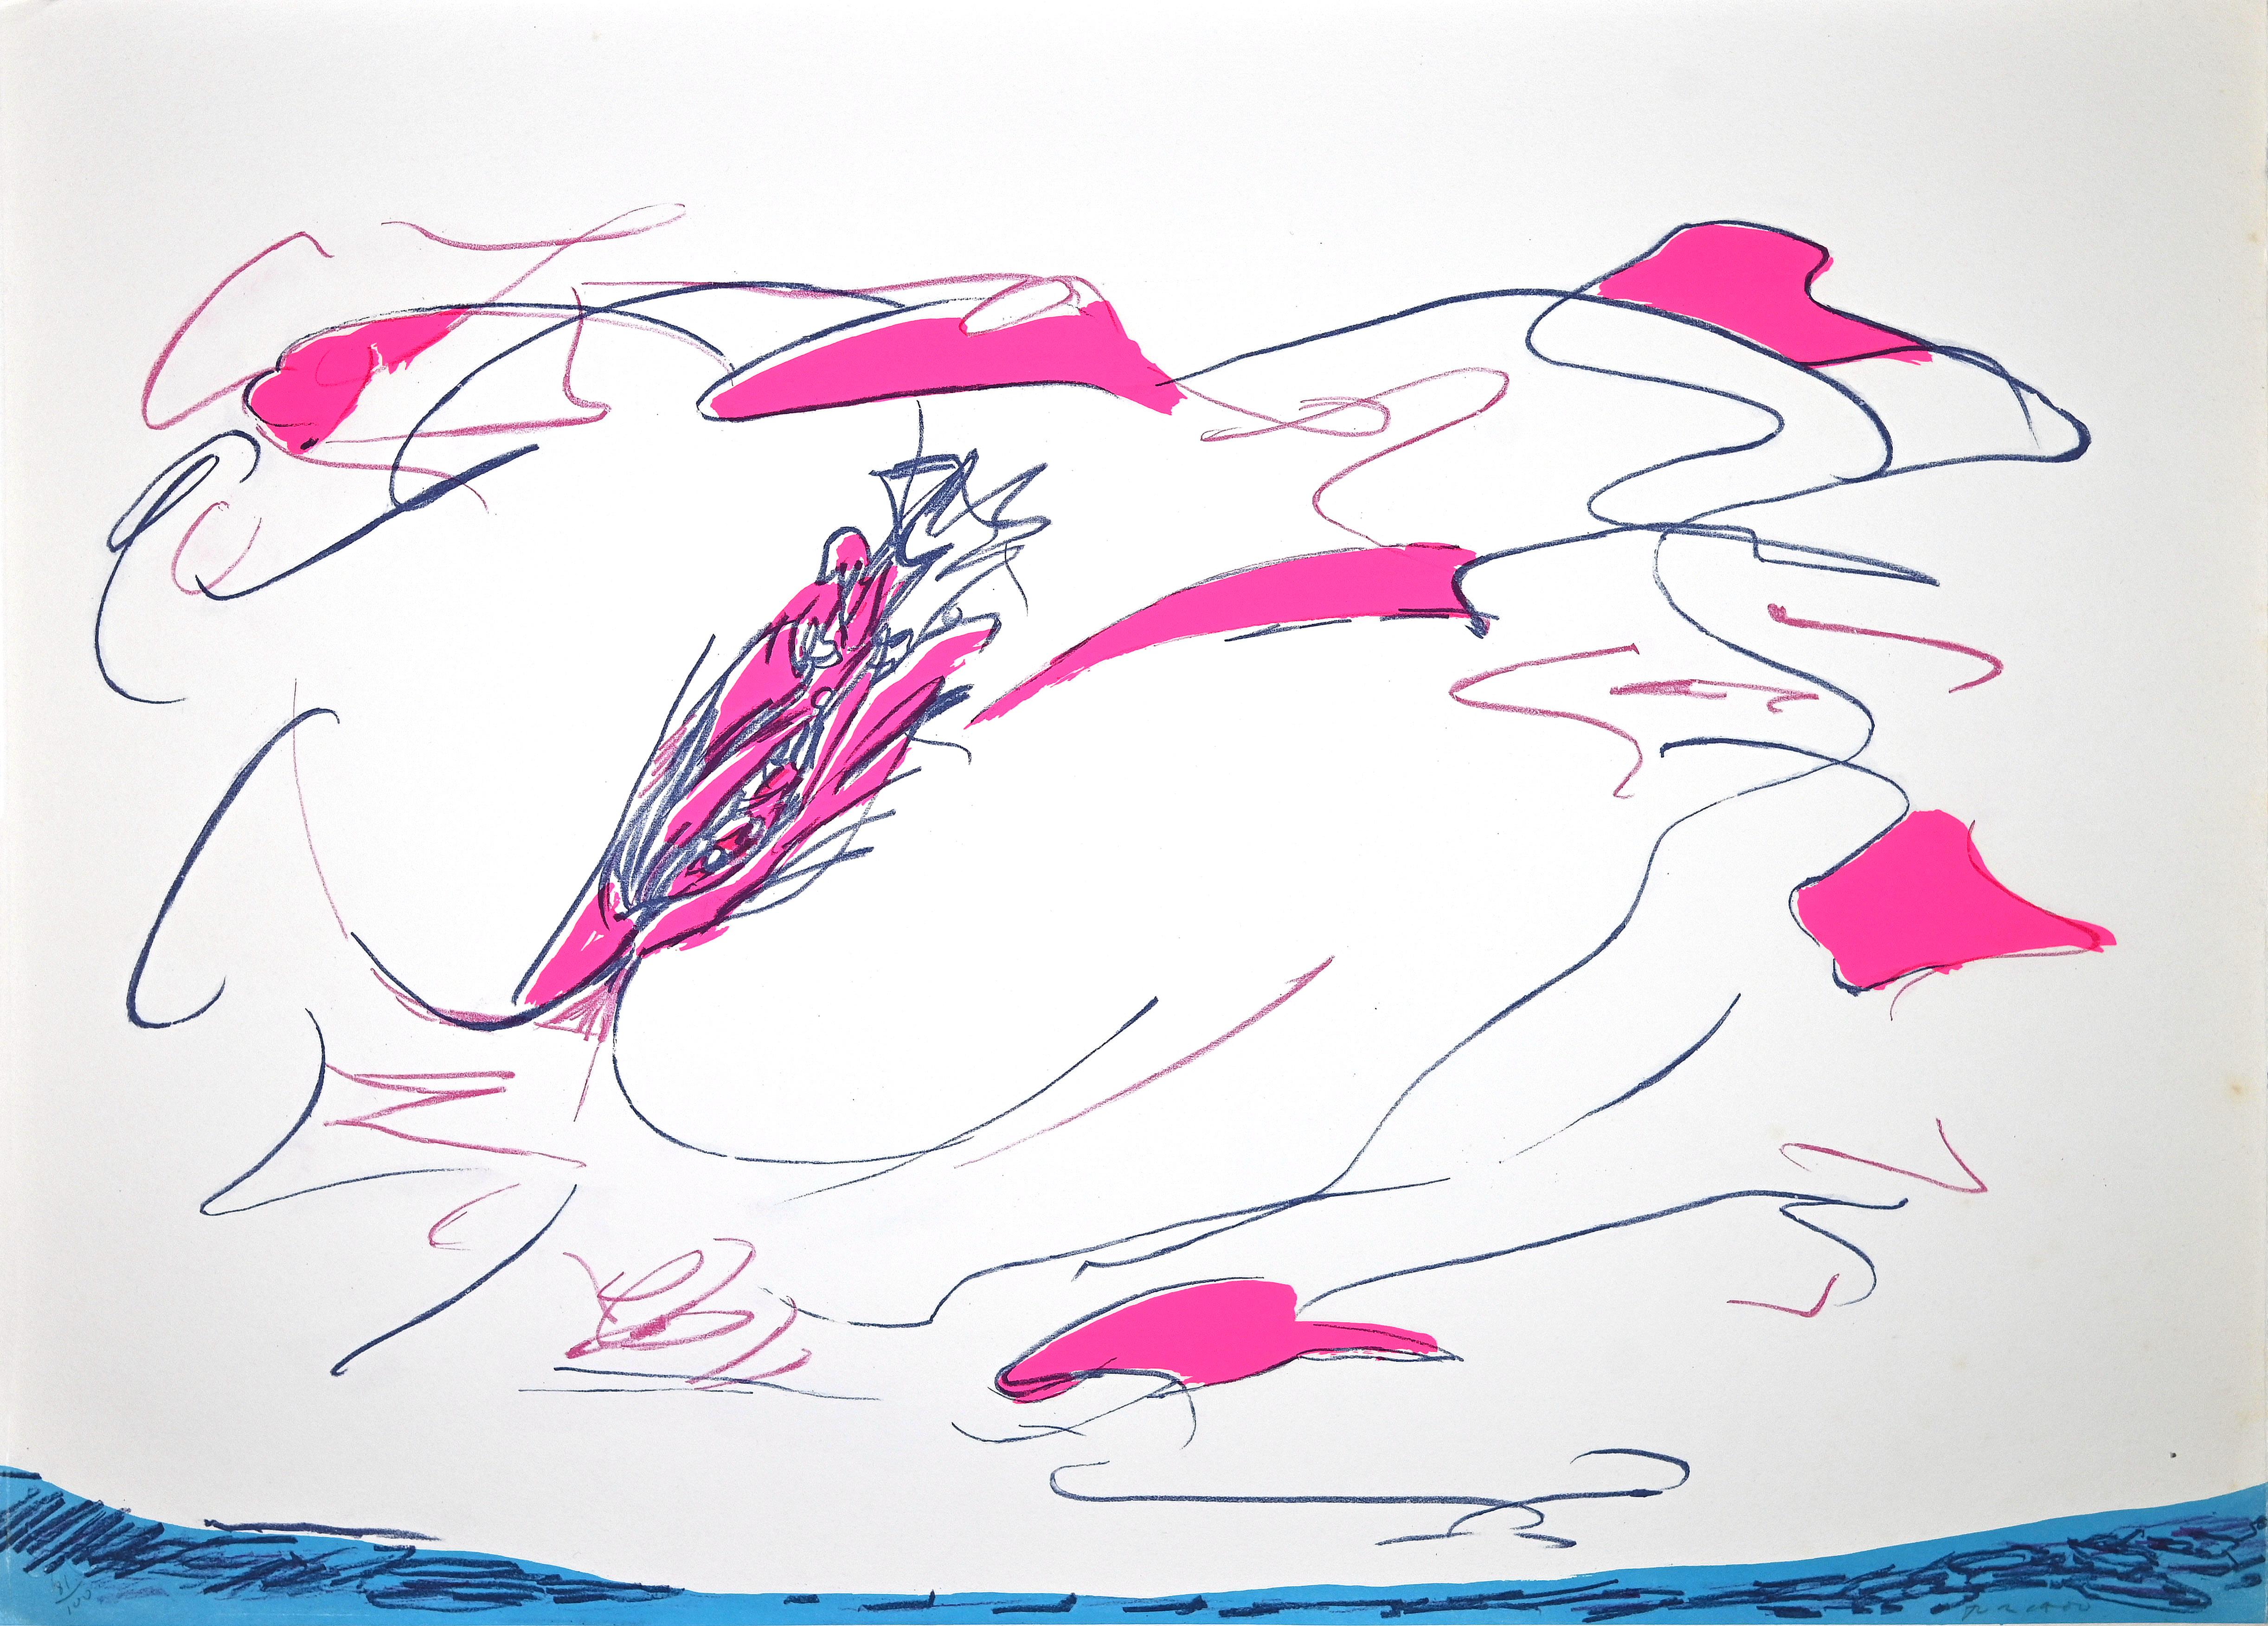 Abstract Composition est une sérigraphie colorée réalisée par l'artiste contemporain Giulio Turcato.

Signé à la main au crayon en bas à droite.

Numéroté dans la marge inférieure gauche, édition de 100 exemplaires.

Etiquette d'authenticité de La